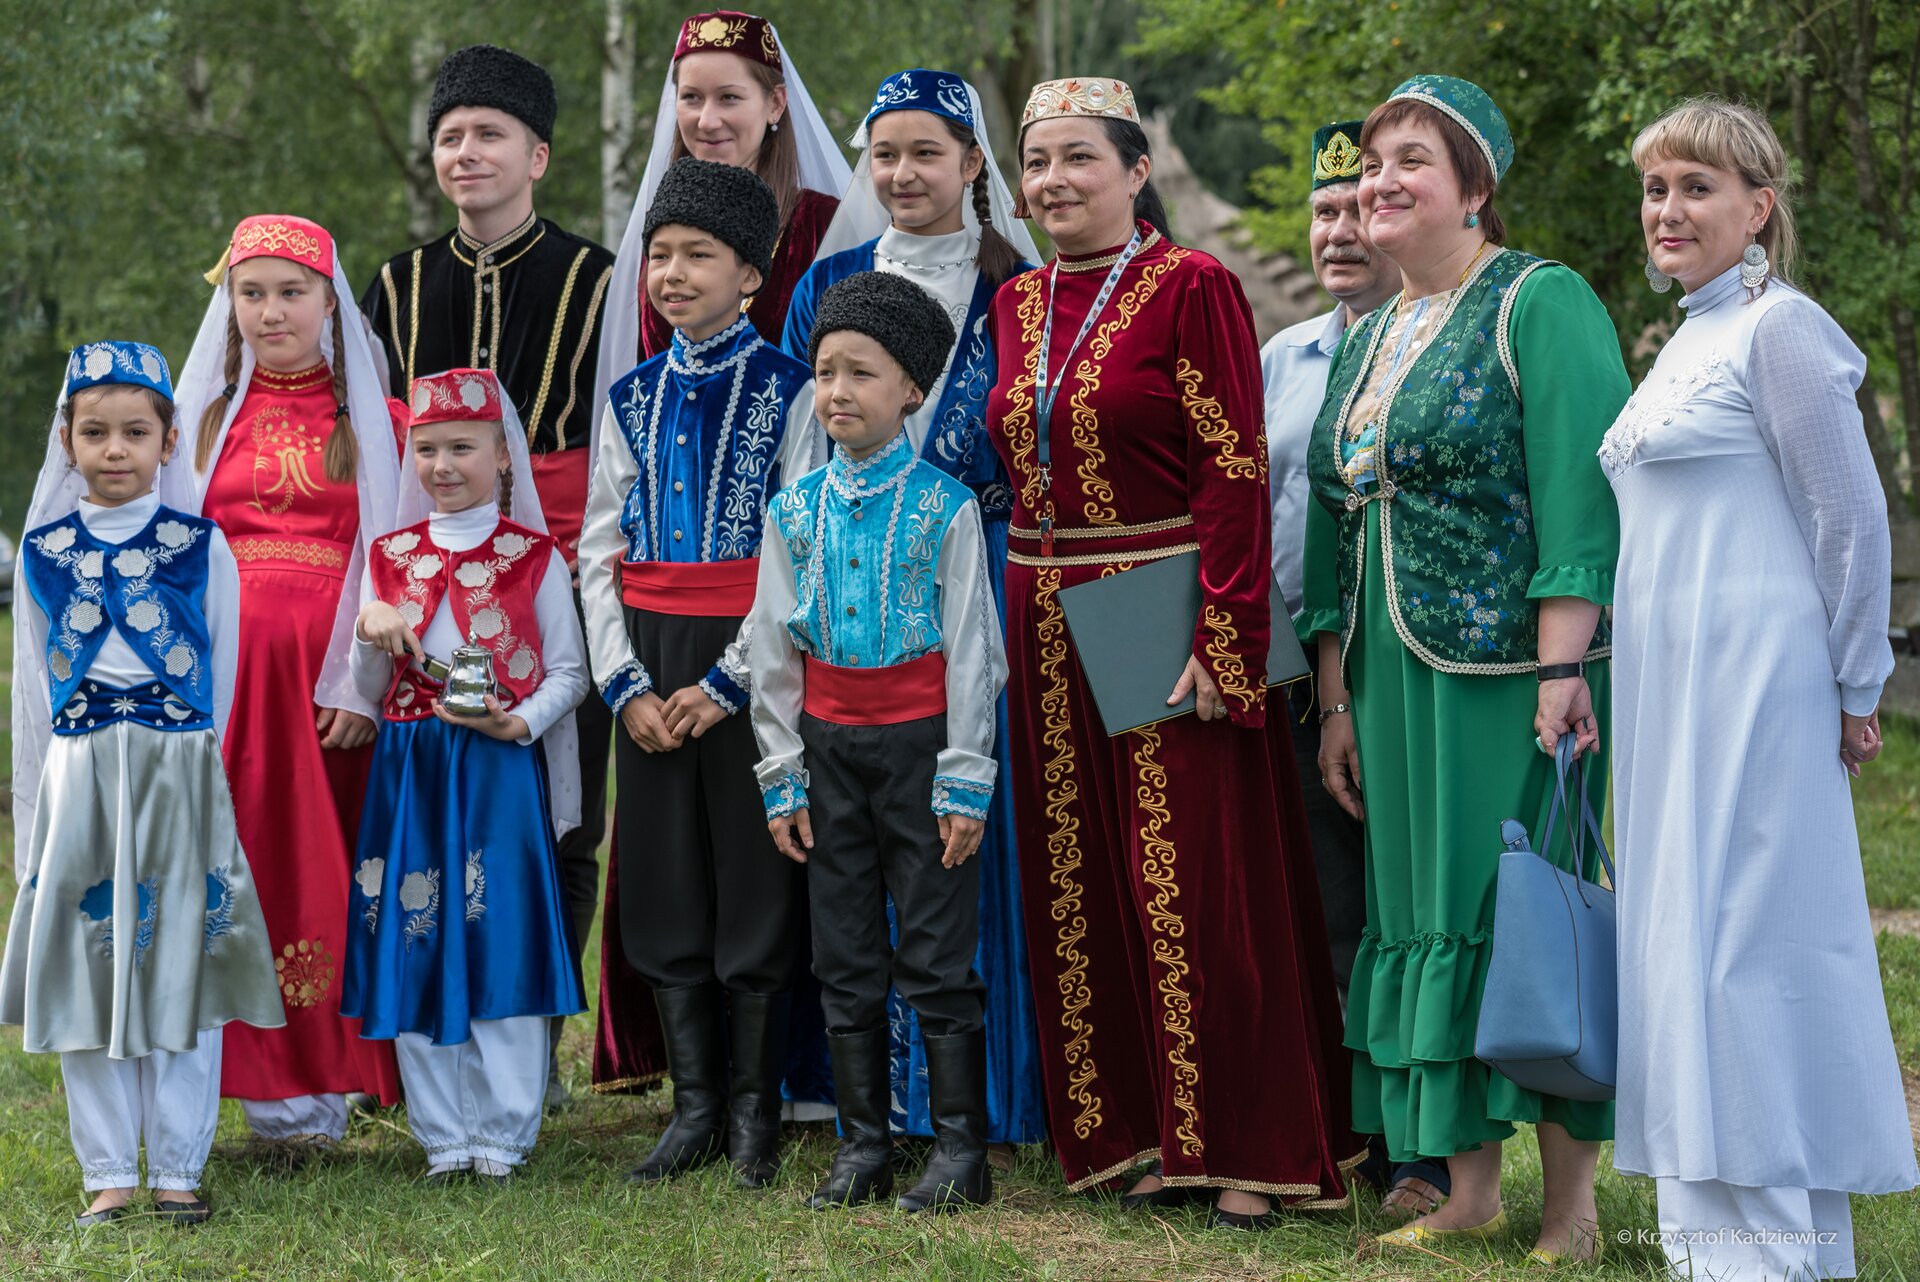 Ilustracja przedstawia rodzinne zdjęcie Tatarów. Wszyscy ubrani są w tradycyjne stroje ludowe.